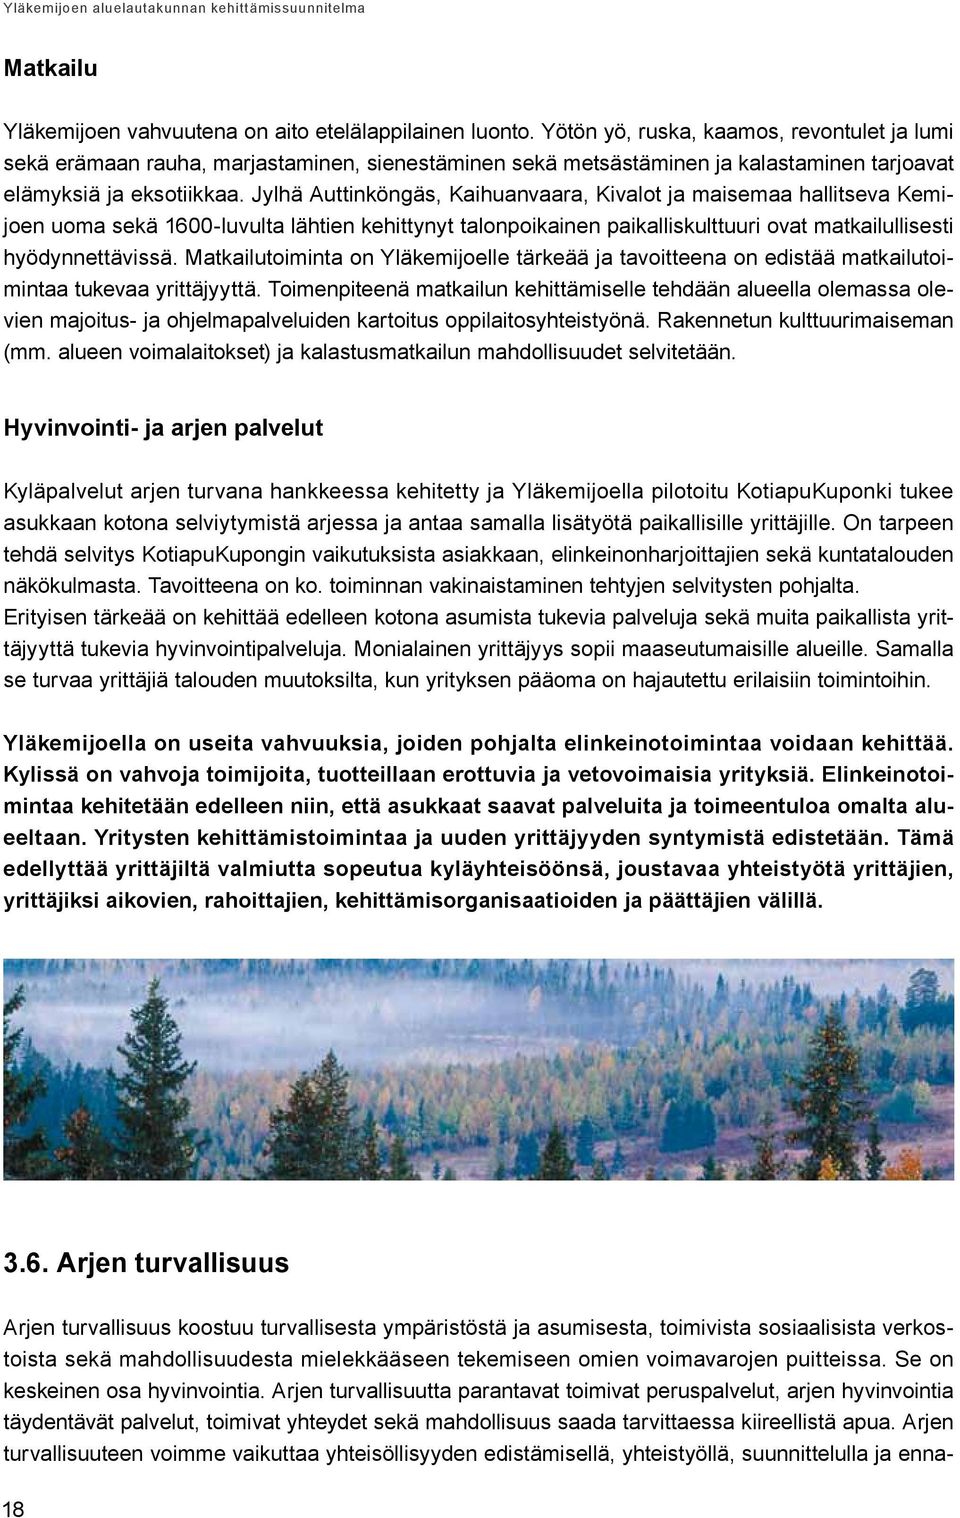 Jylhä Auttinköngäs, Kaihuanvaara, Kivalot ja maisemaa hallitseva Kemijoen uoma sekä 1600-luvulta lähtien kehittynyt talonpoikainen paikalliskulttuuri ovat matkailullisesti hyödynnettävissä.